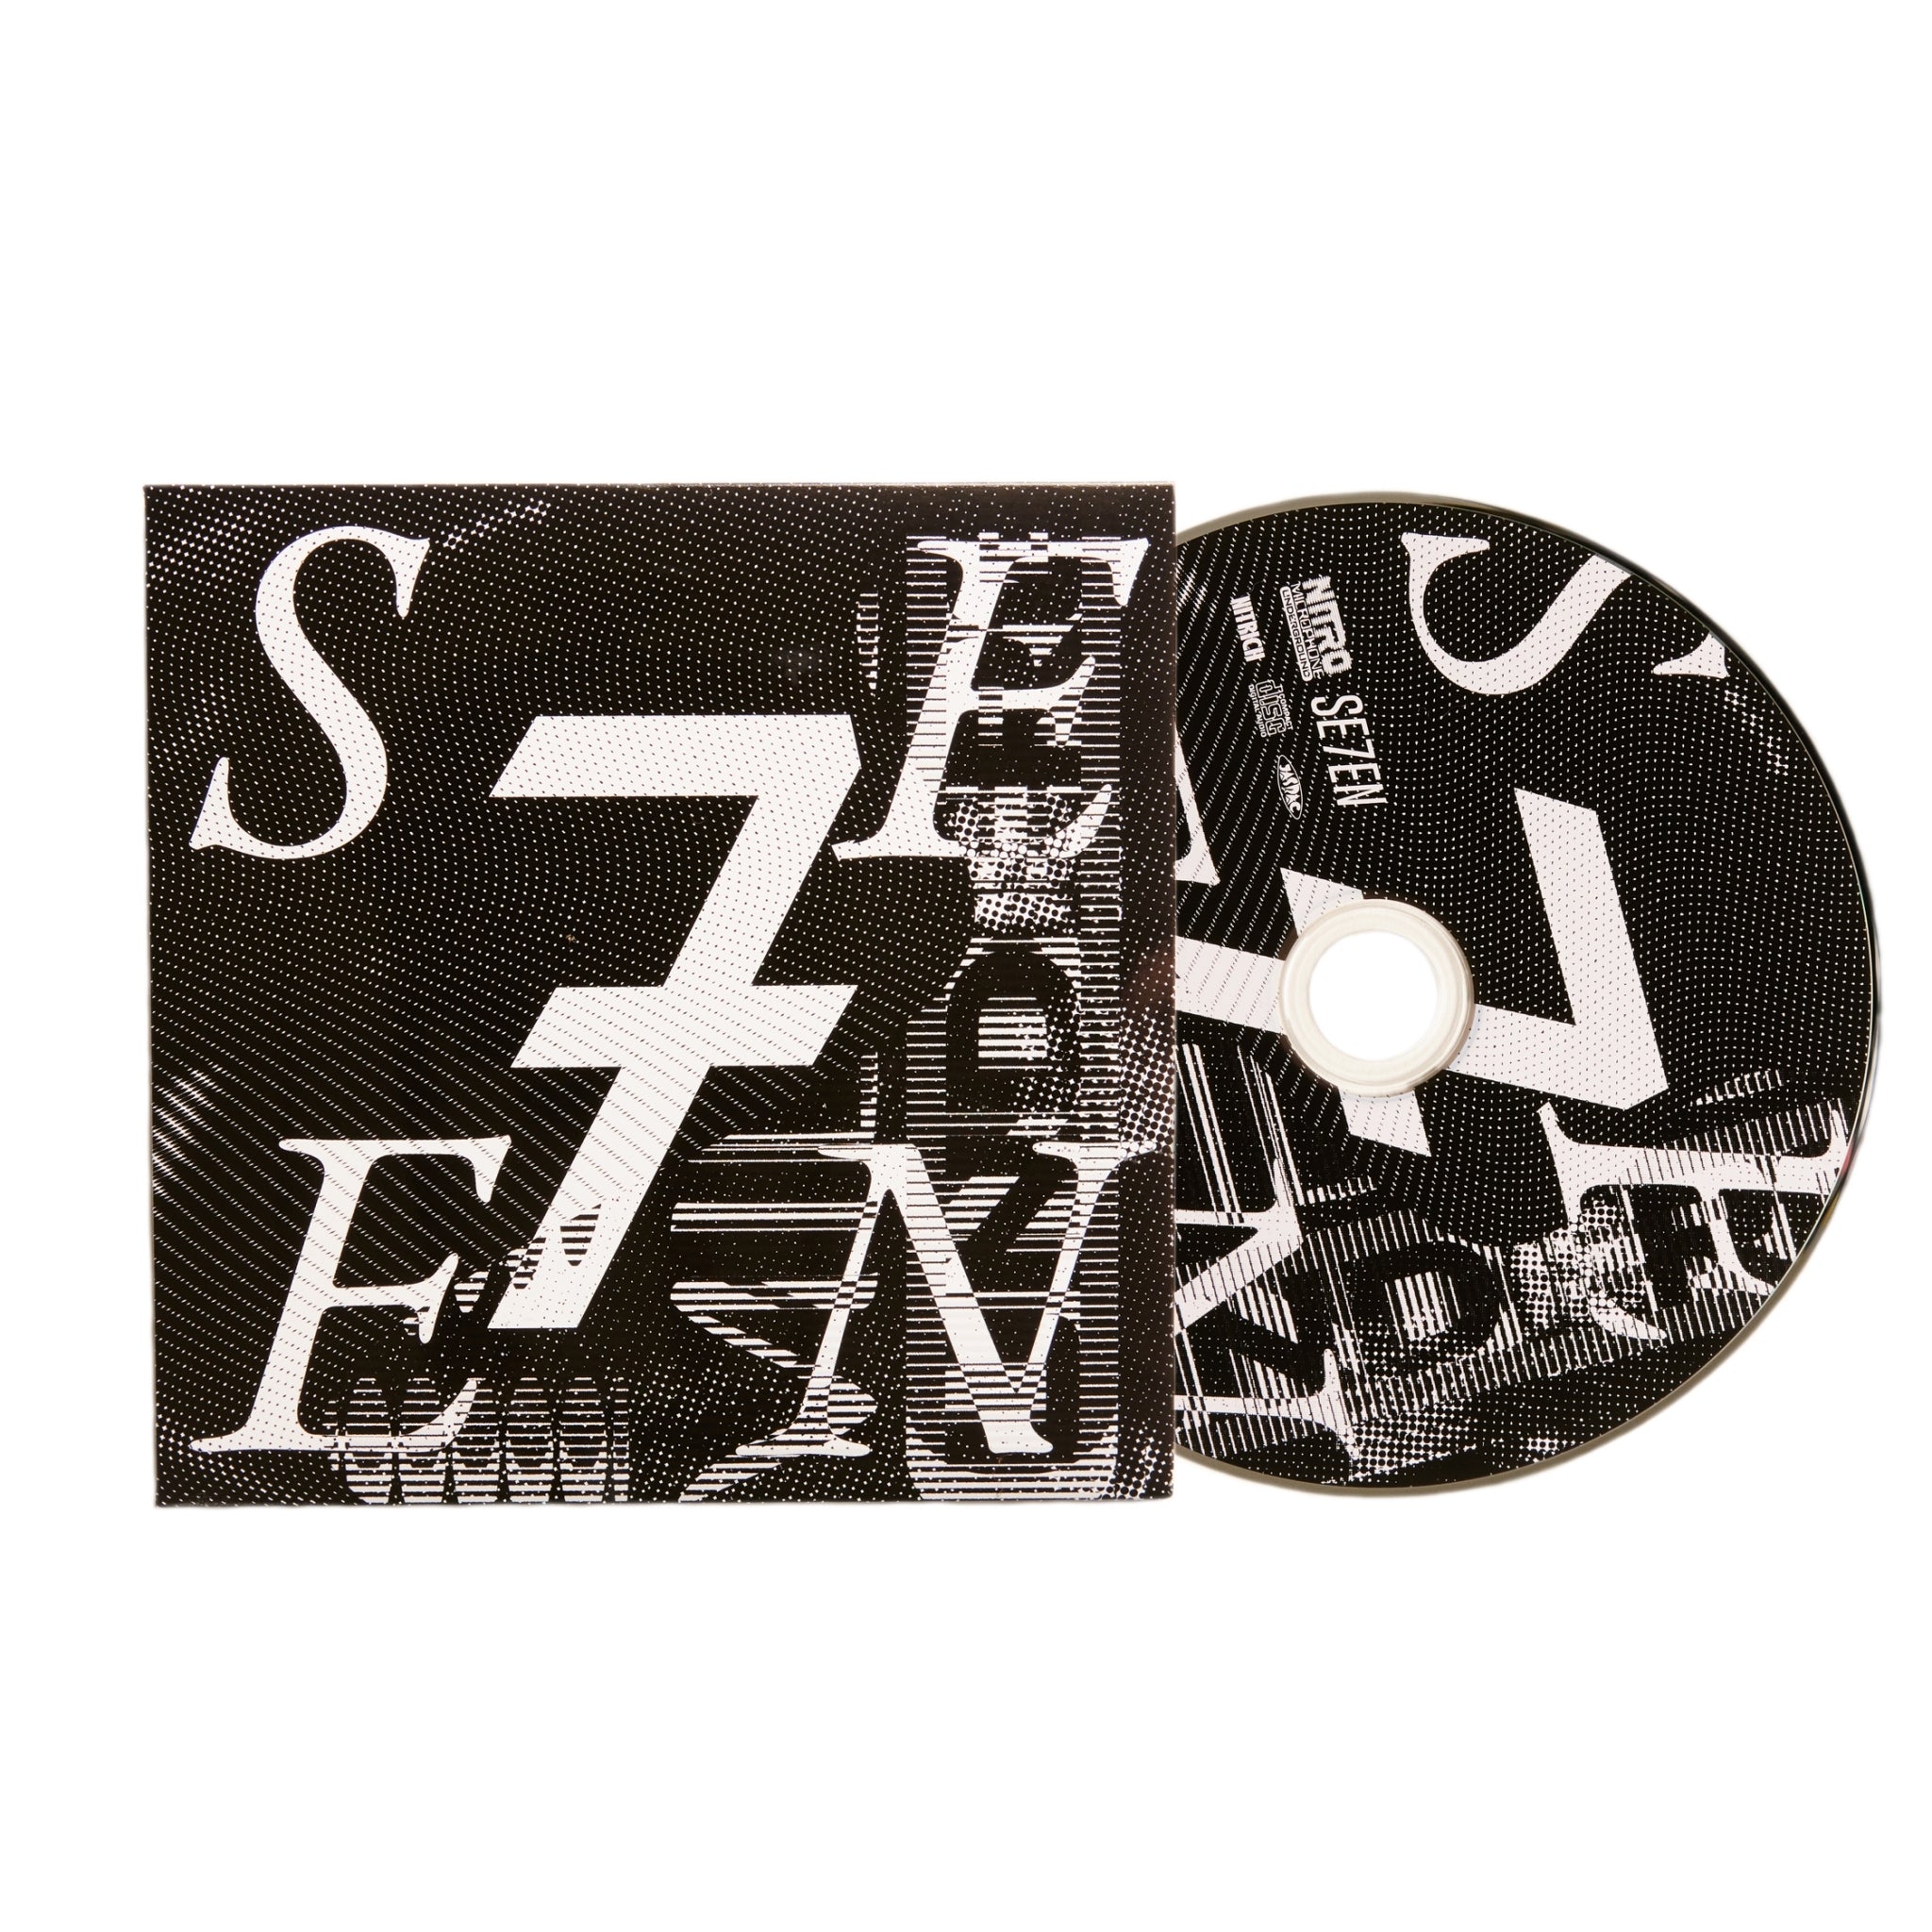 F様専用 NITRO TEE with Album CD SE7EN XXL-